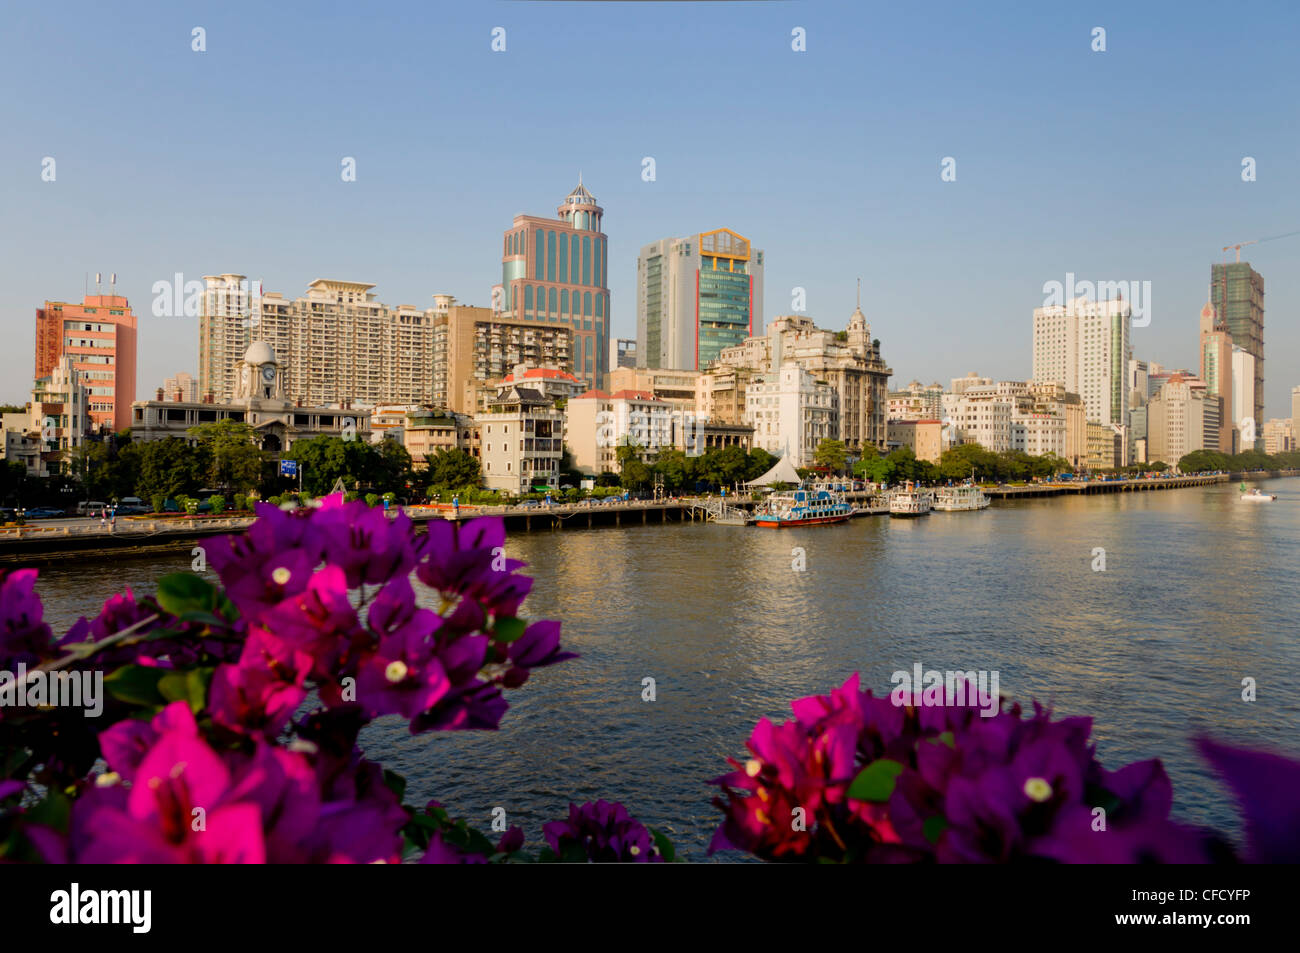 River and city, Guangzhou, Guangdong, China, Asia Stock Photo